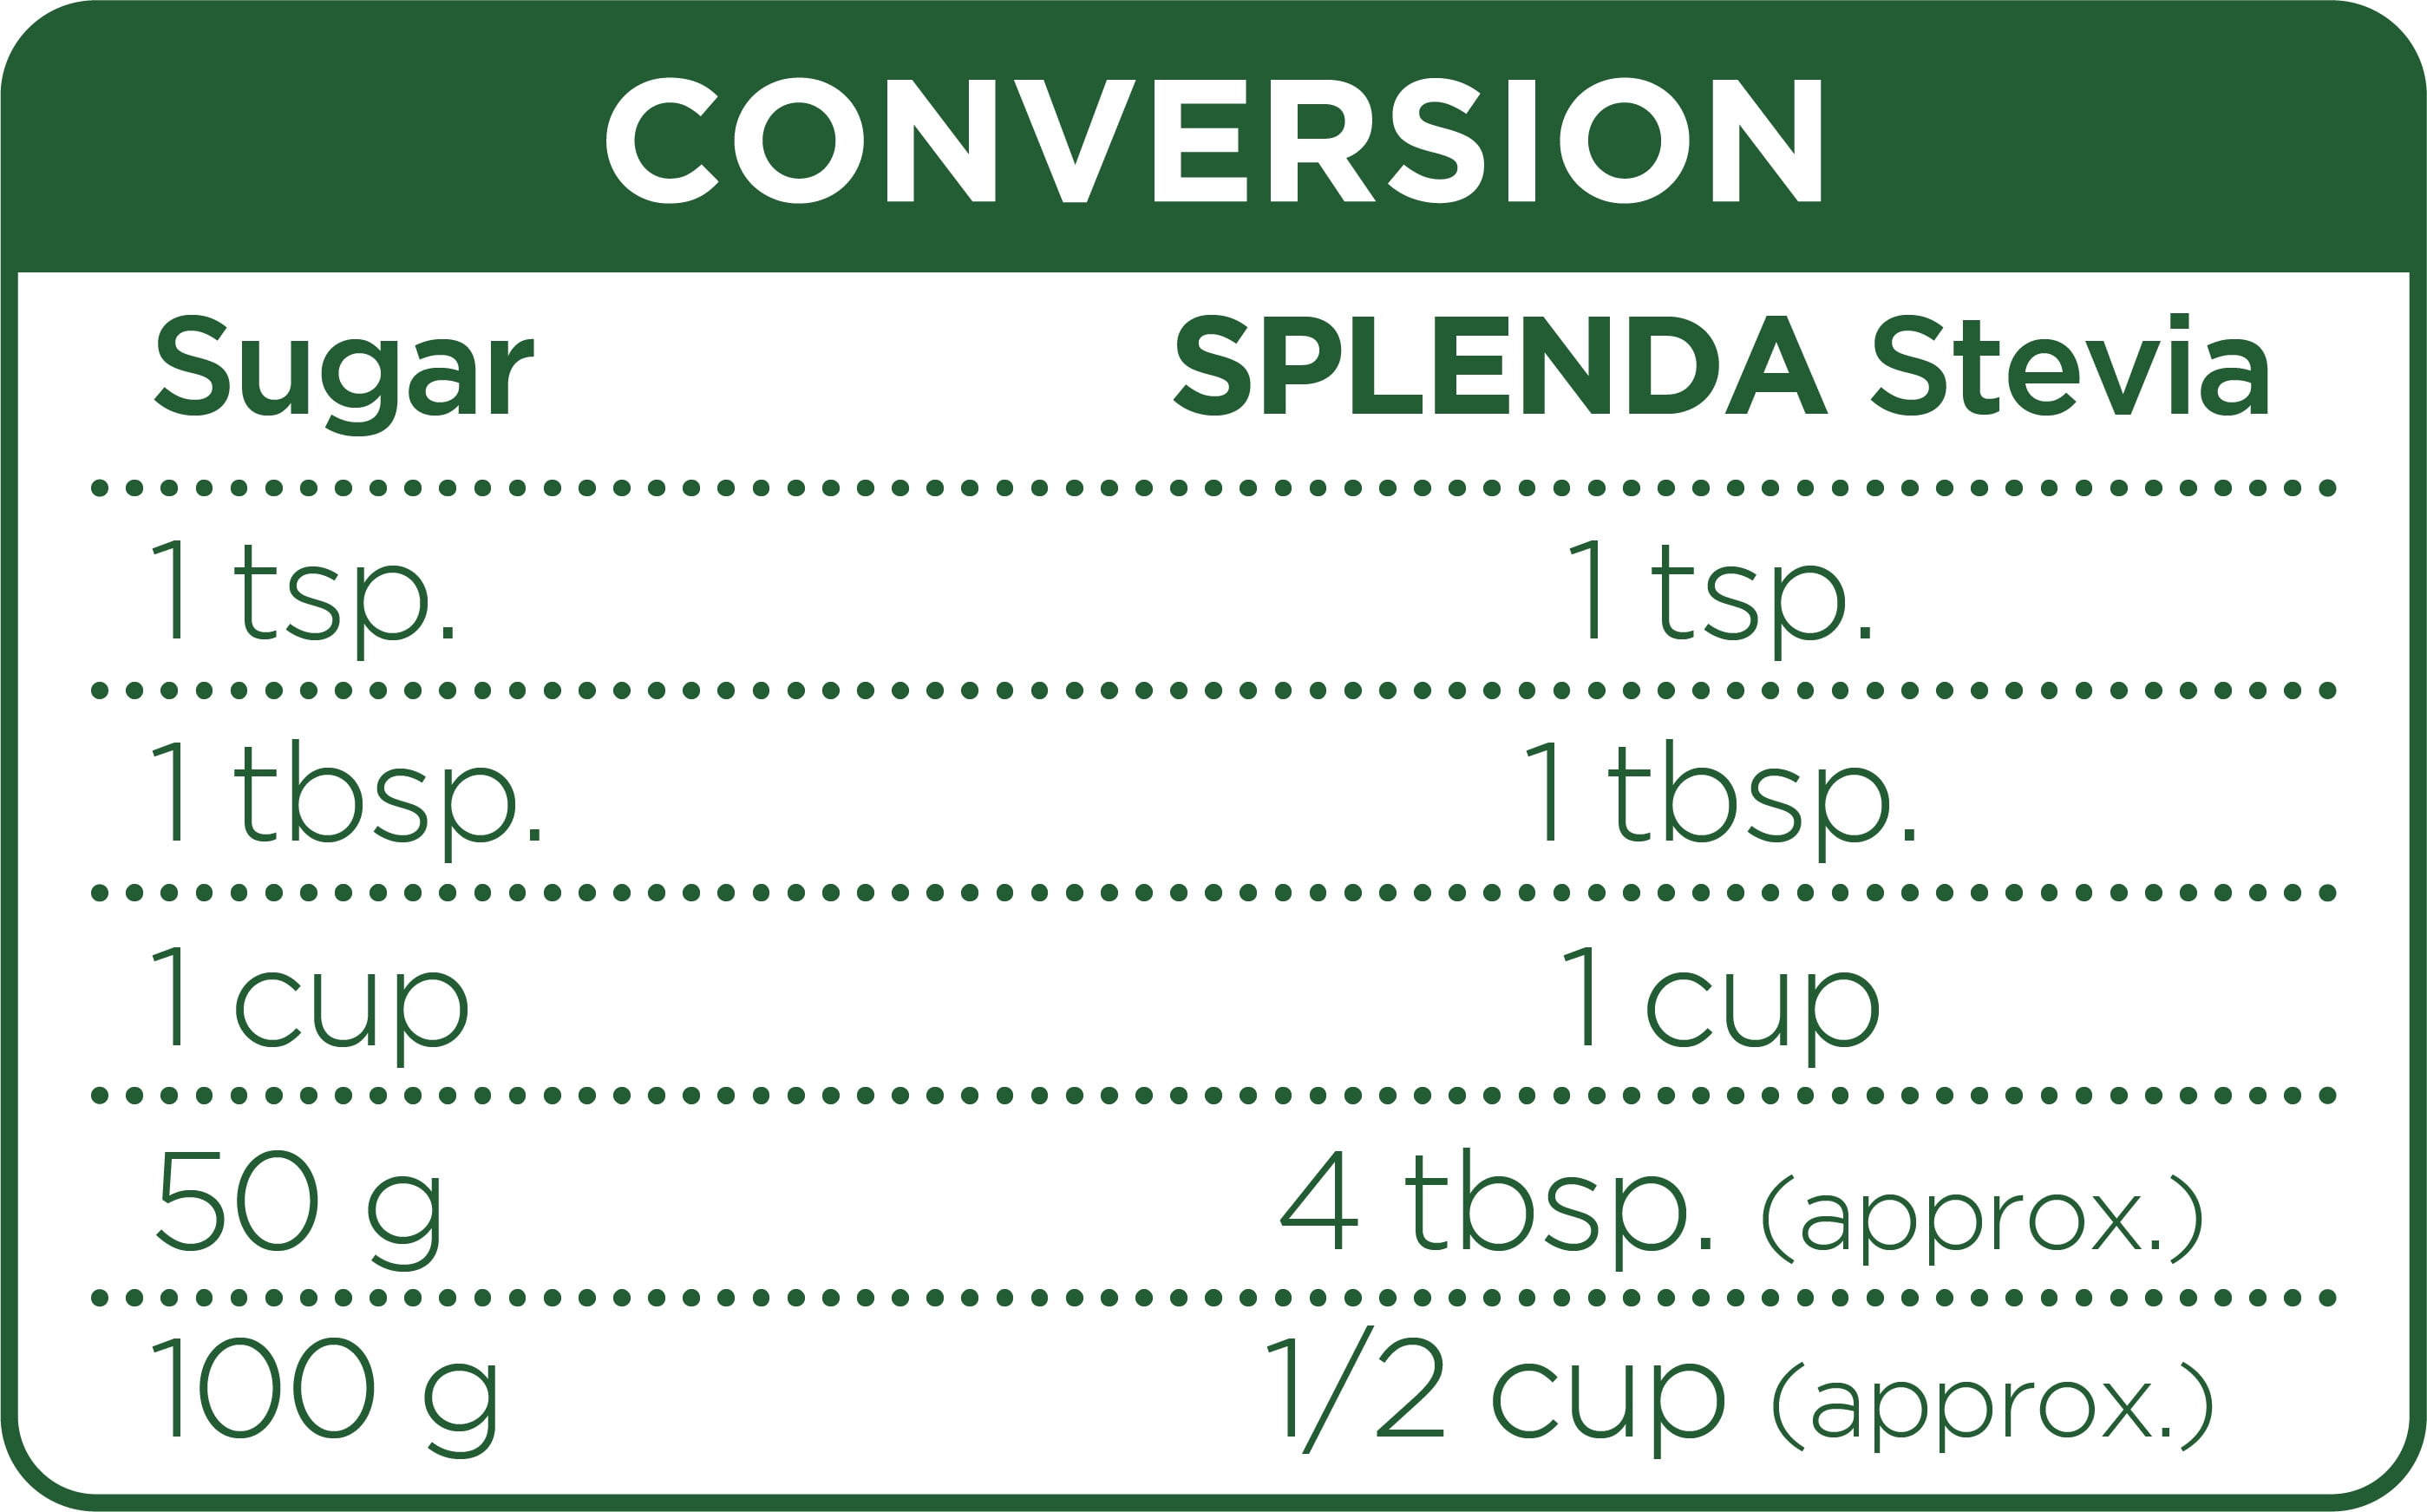 Splenda Stevia Conversion Chart